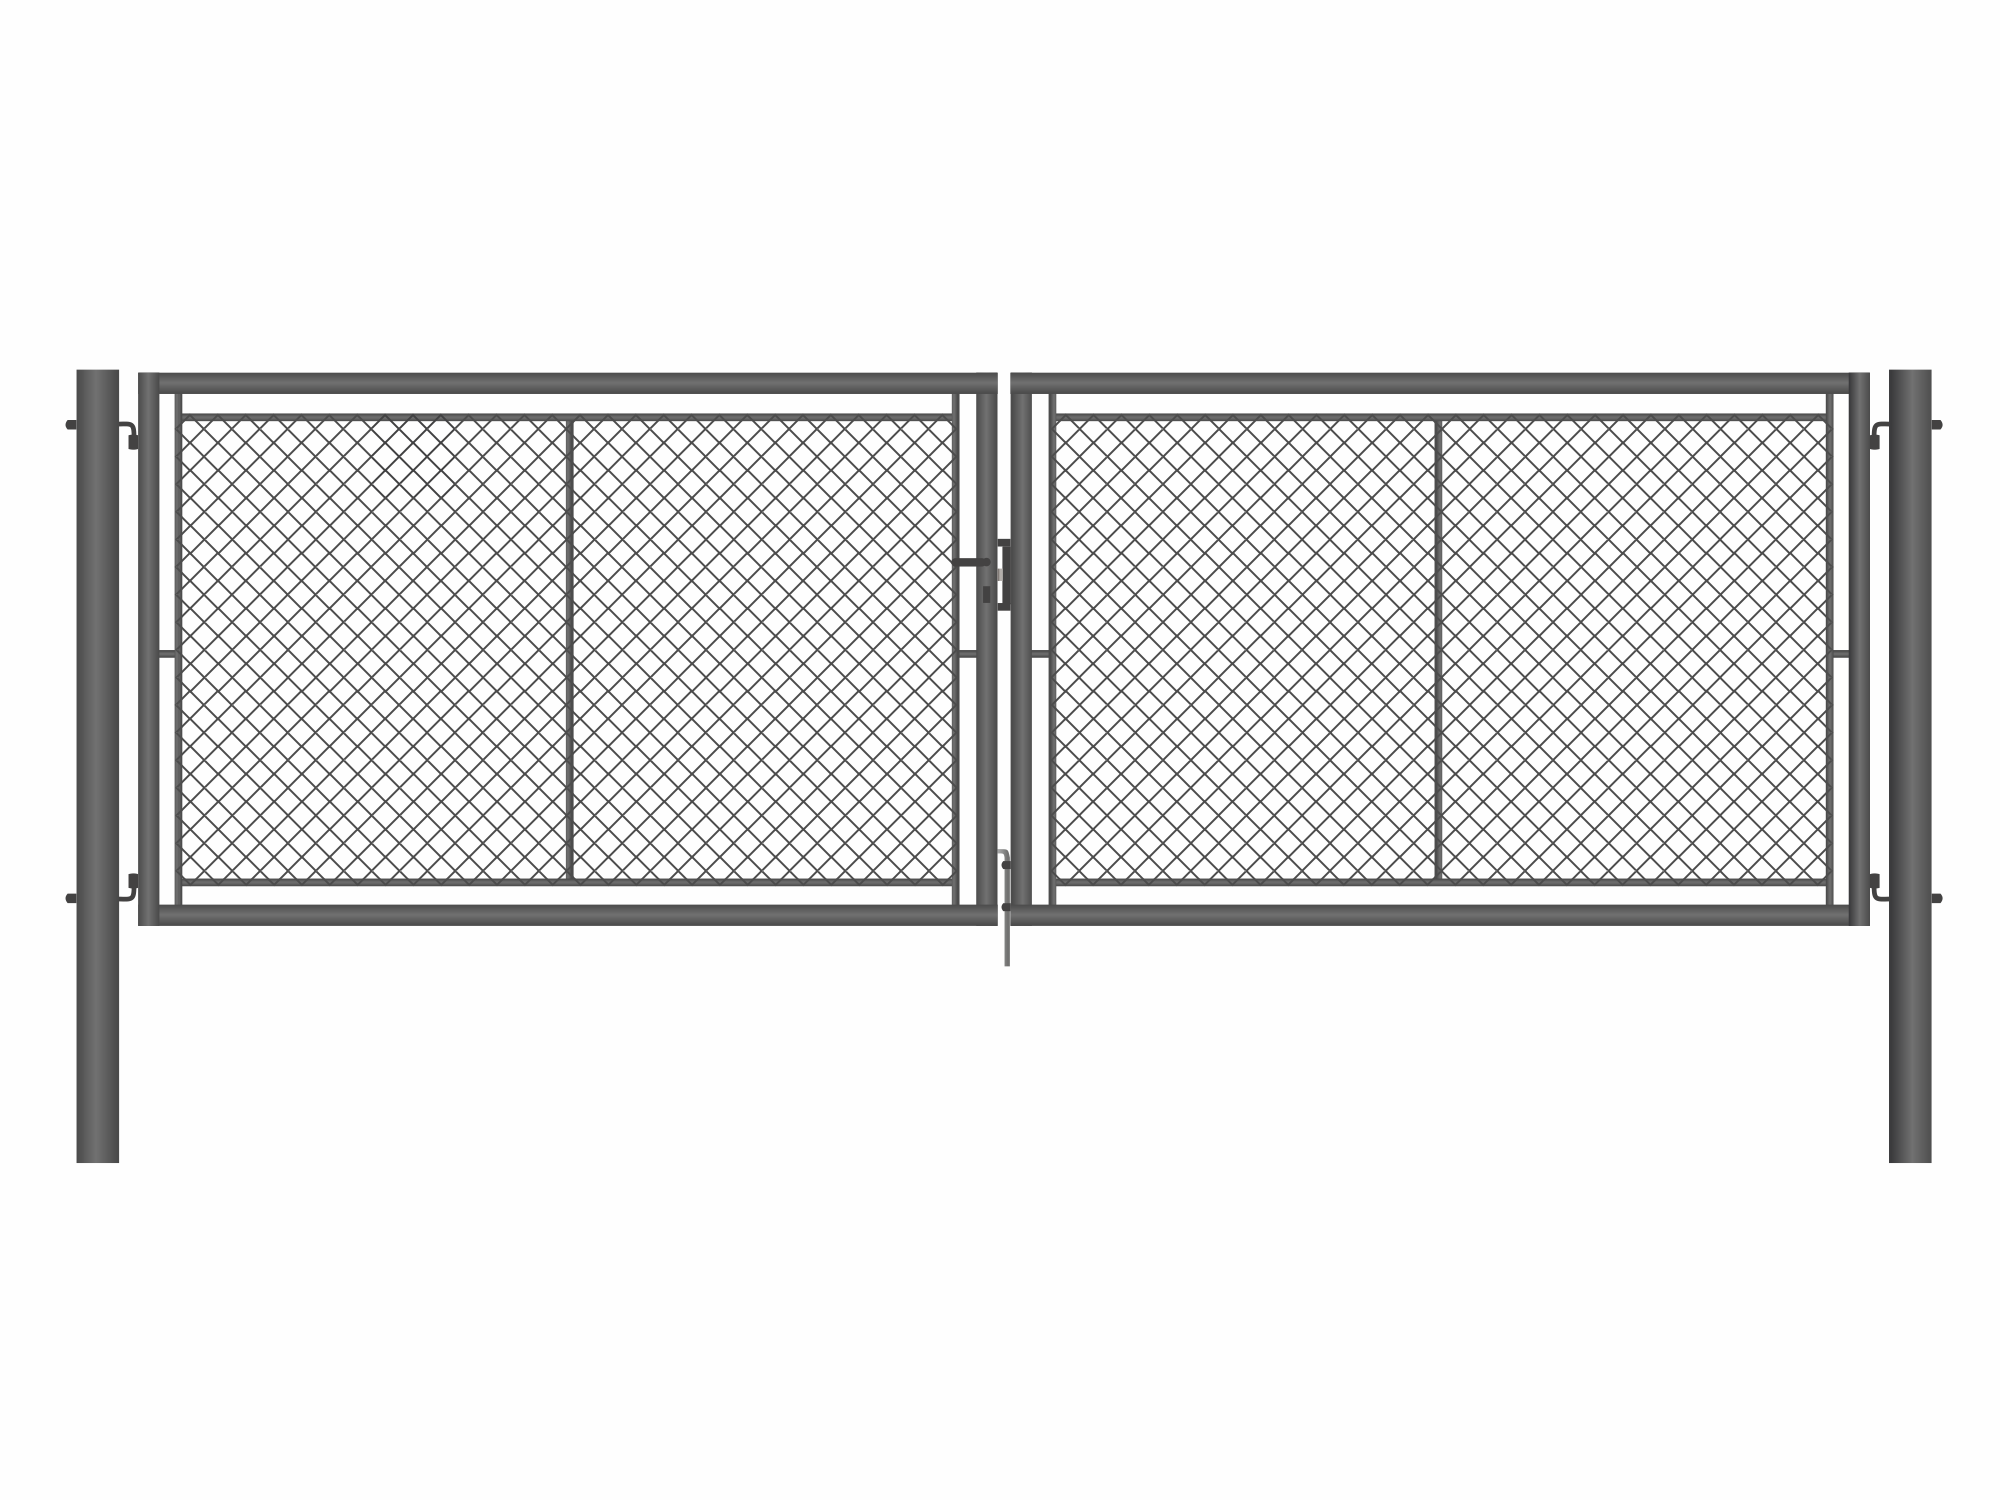 Brána zahradní dvoukřídlá antracit, výška 120 x 500 cm, FAB, s výplní klasického pletiva PLOTY Sklad5 9892 535